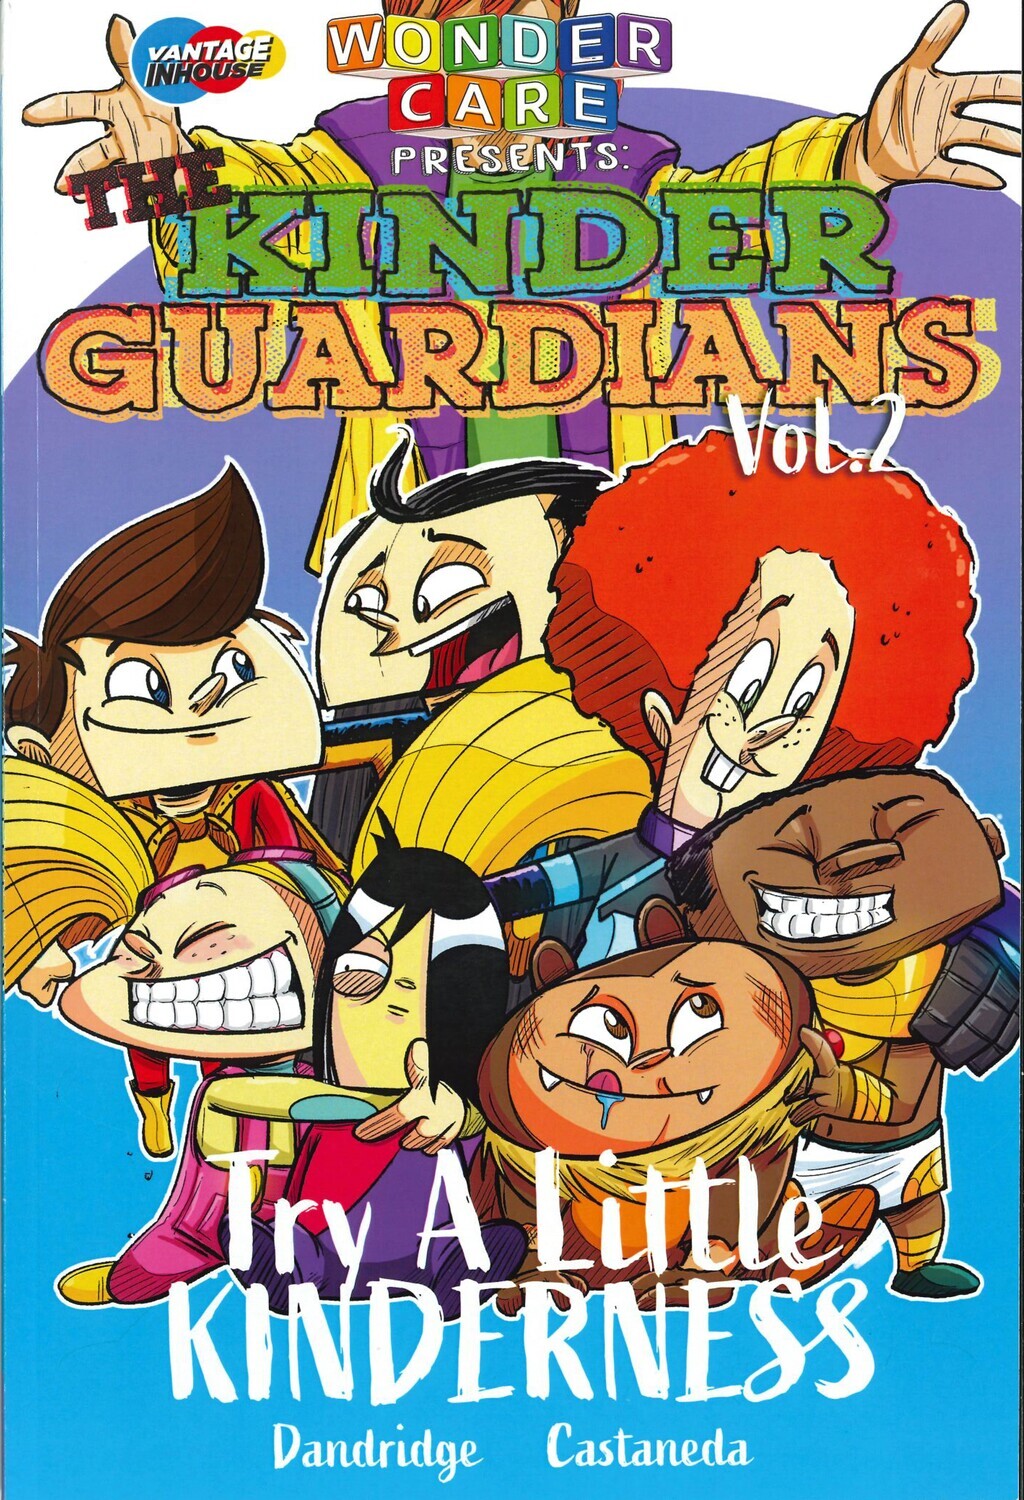 The Kinder Guardians Volume 2